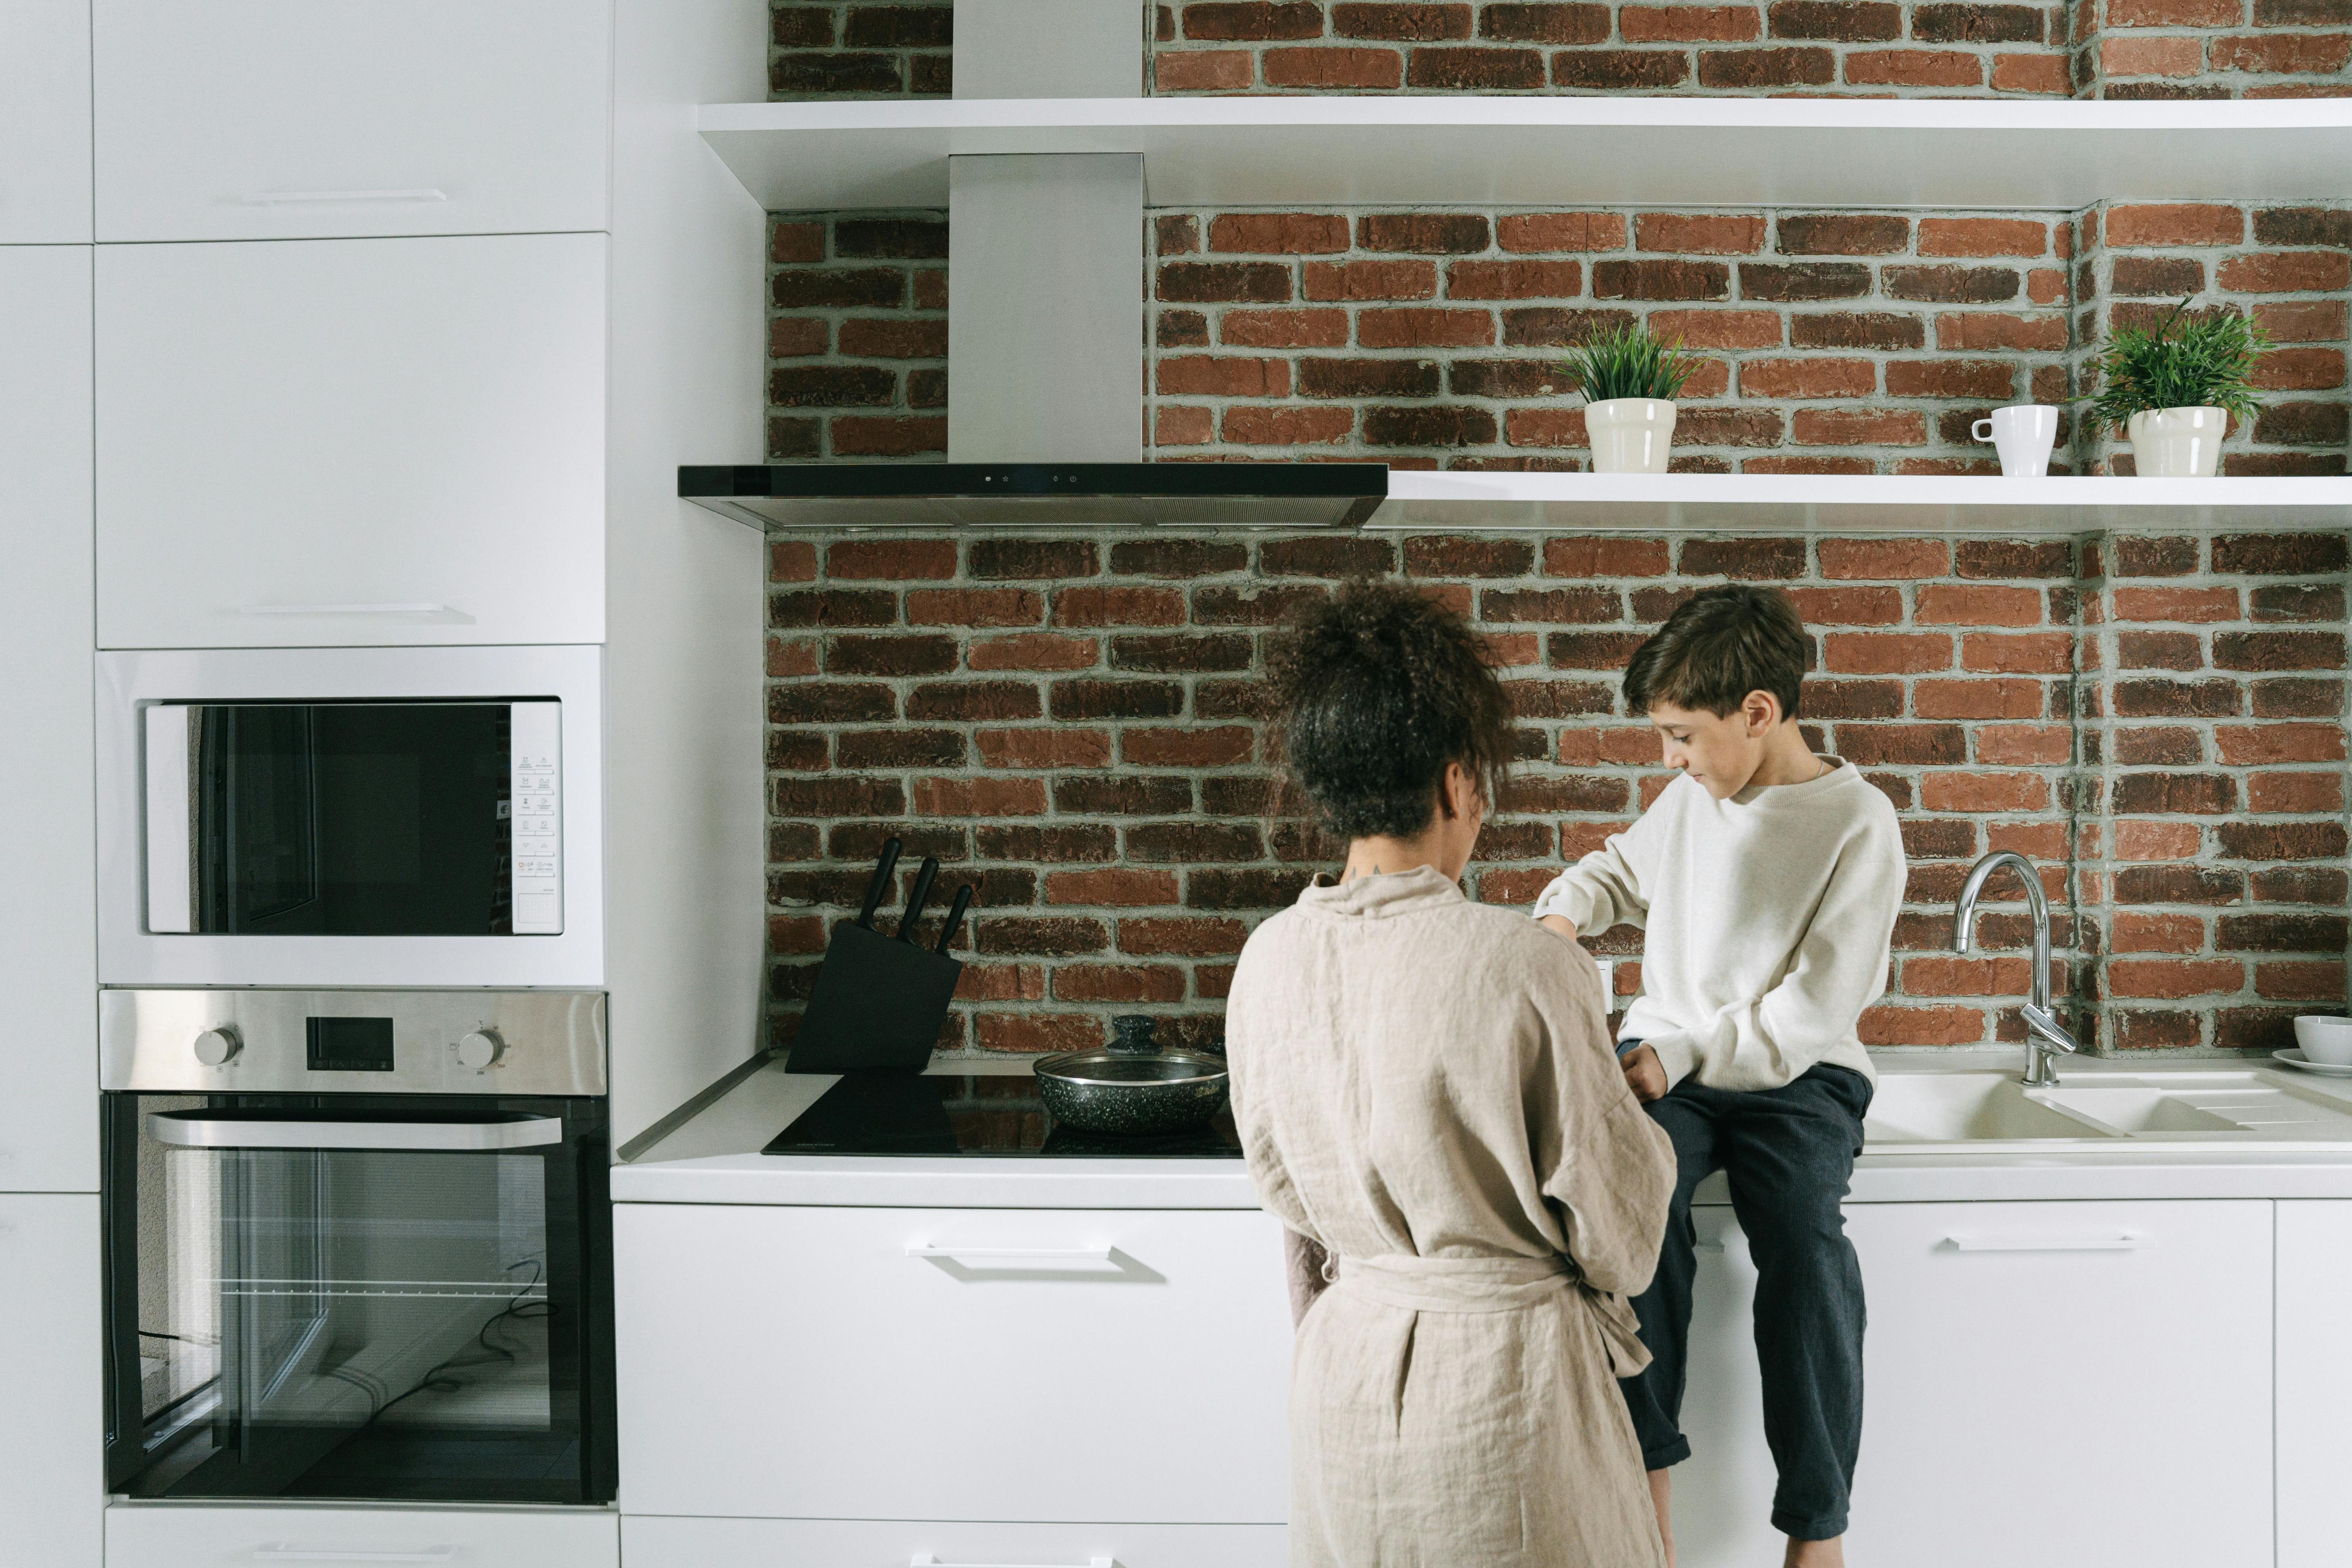 Eine Frau und ihr Sohn in der Küche | Quelle: Pexels